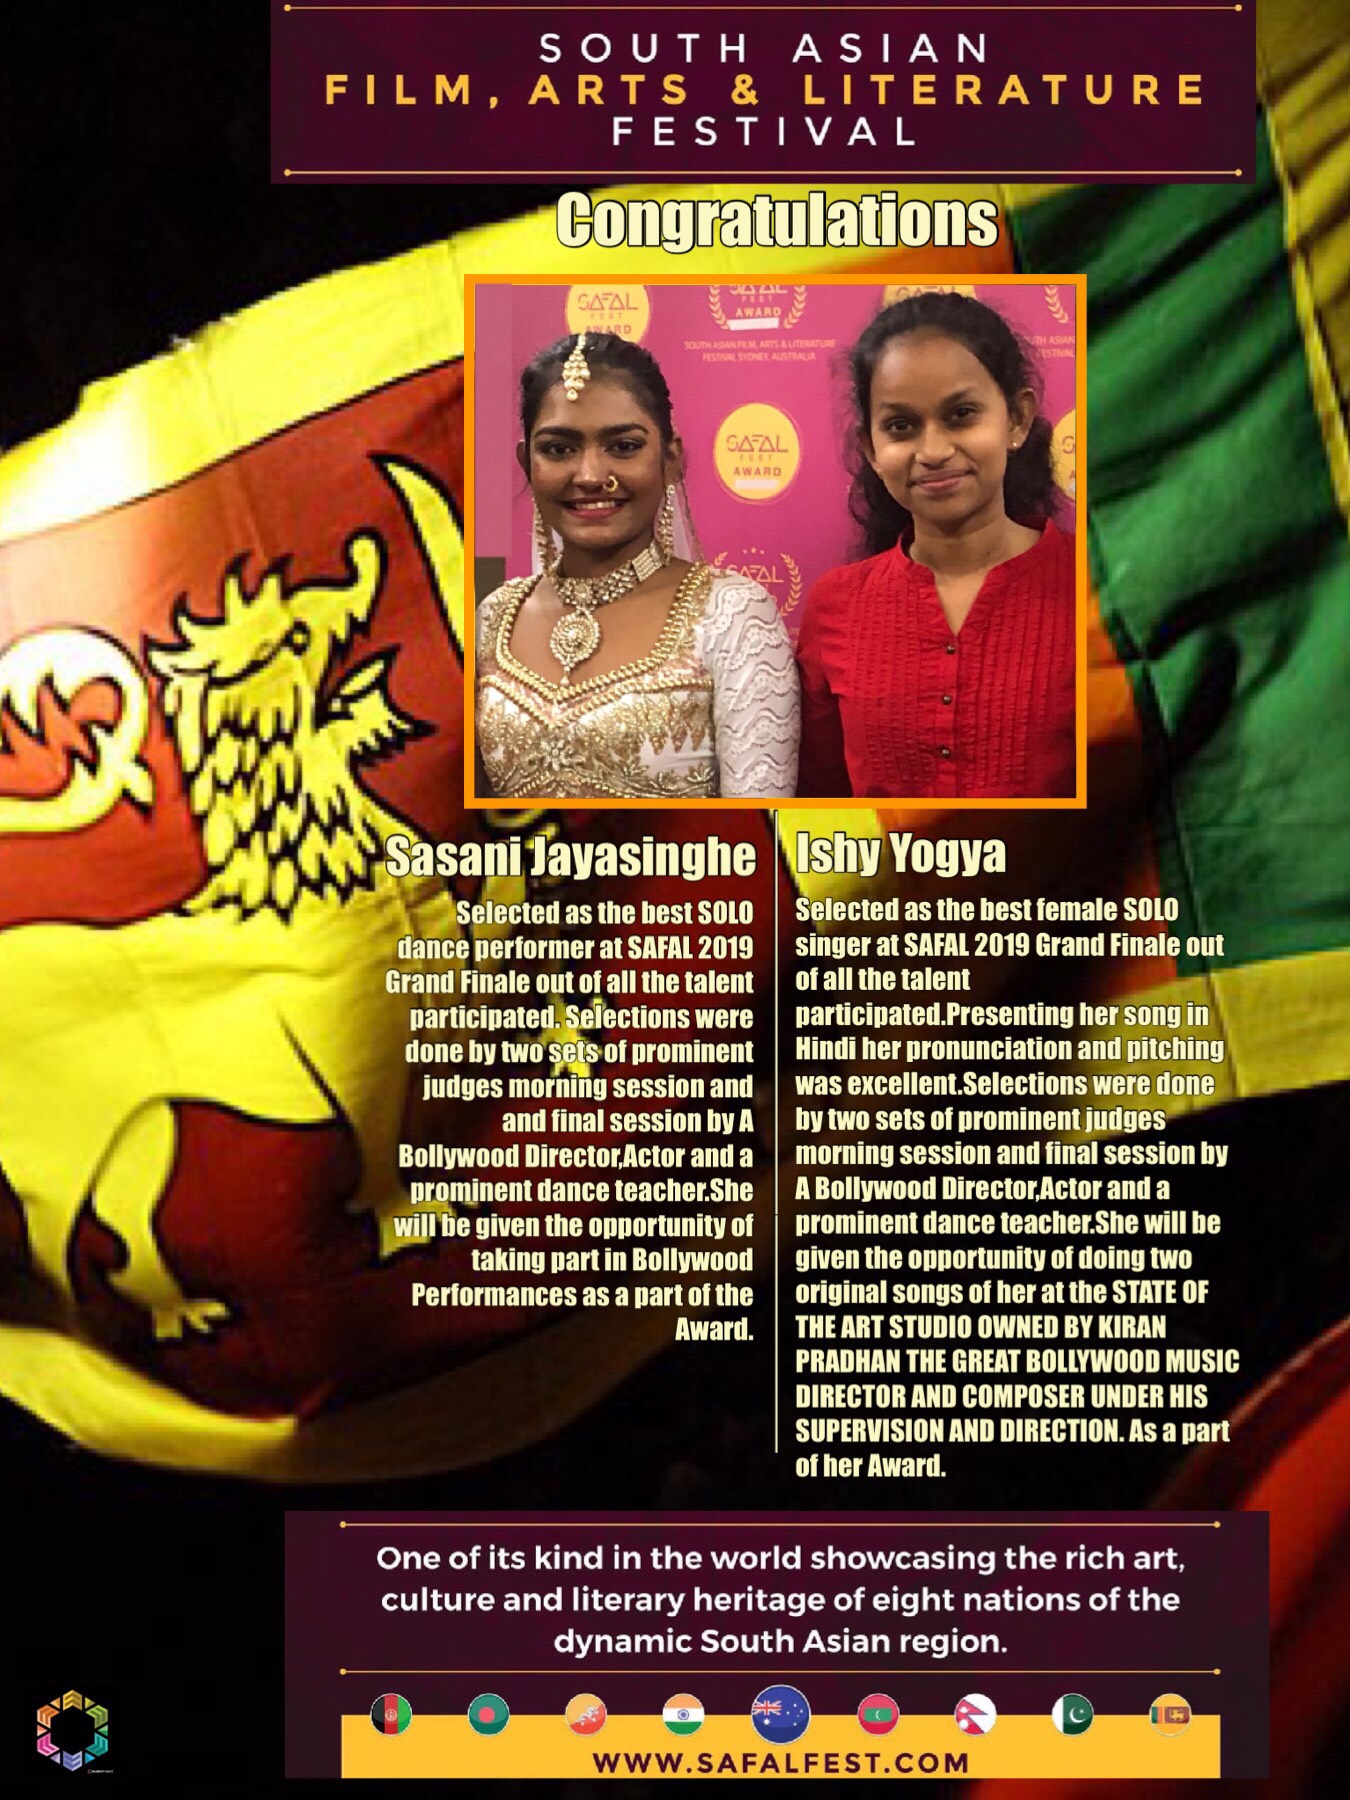 SriLankan winners at SAFAL